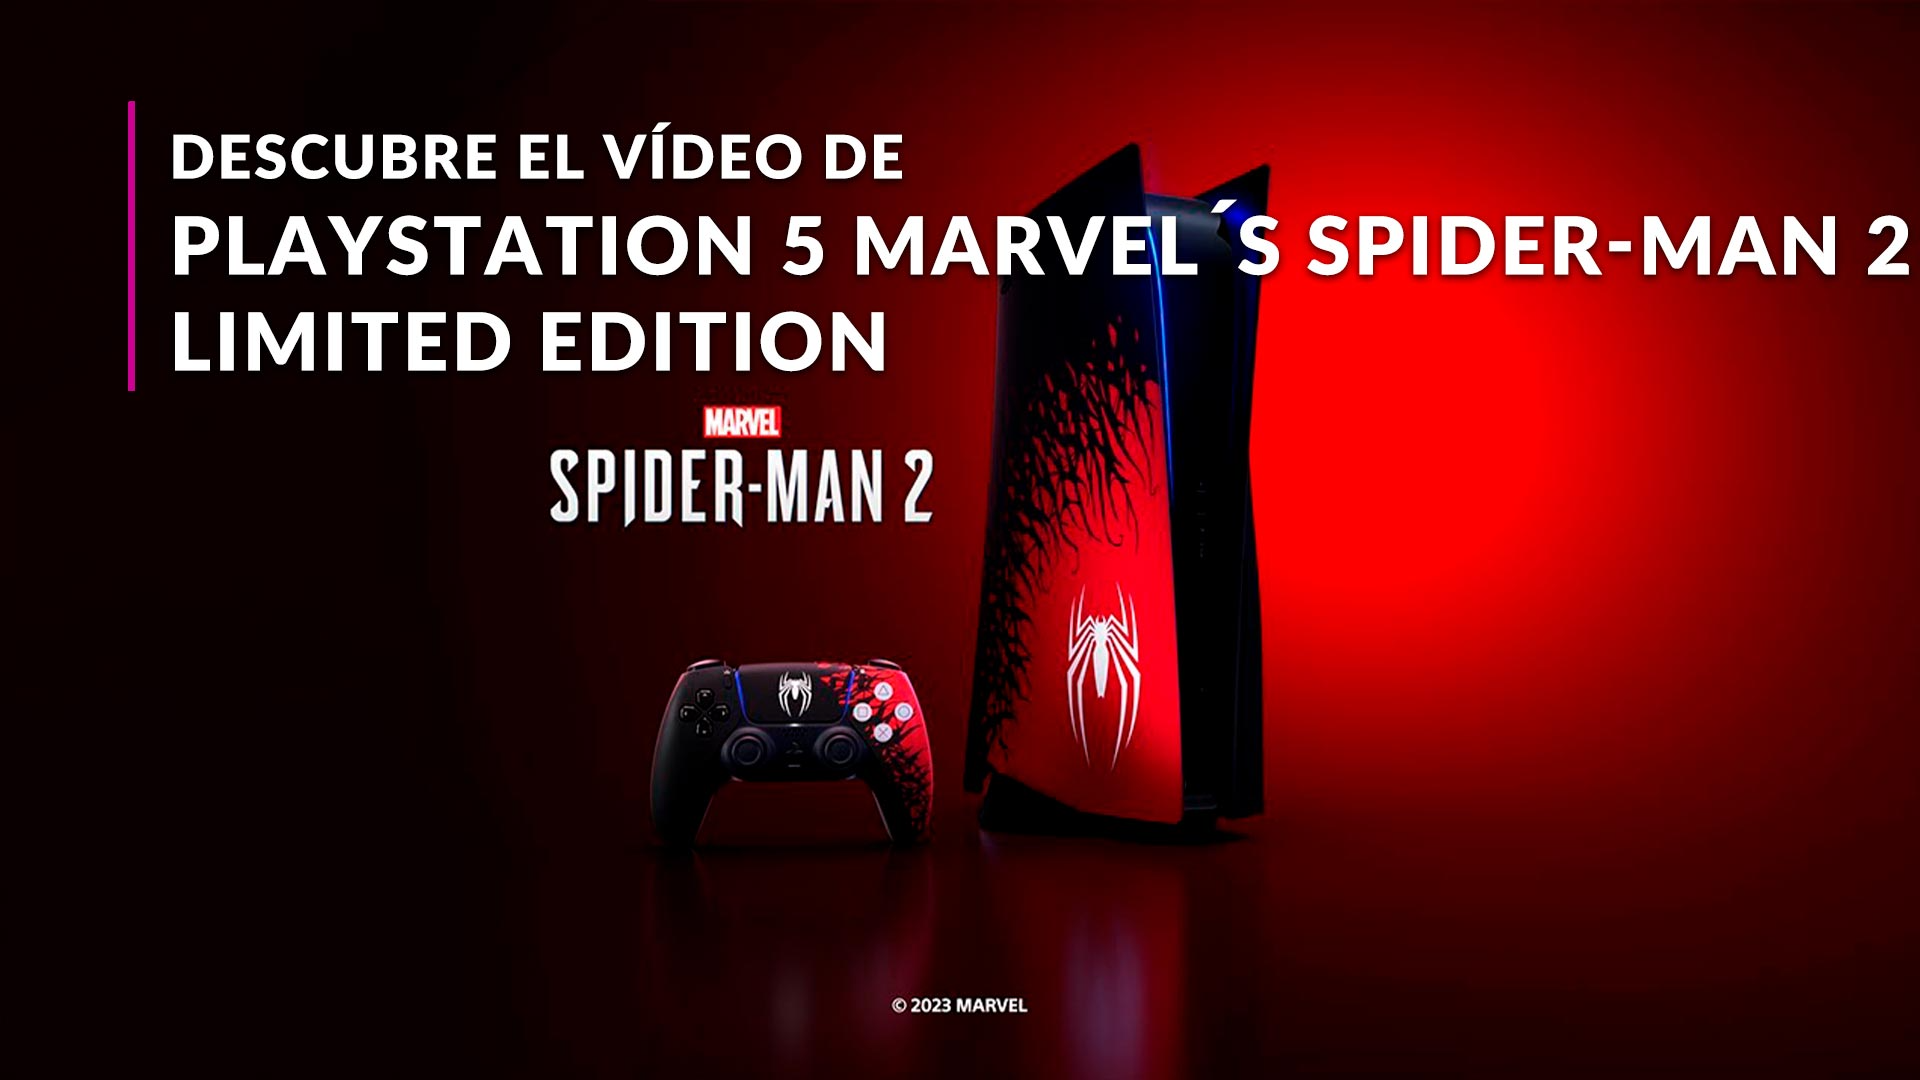 Mando PS5 Dualsense – Edición Limitada Spider-Man 2 – PLAY GAMES